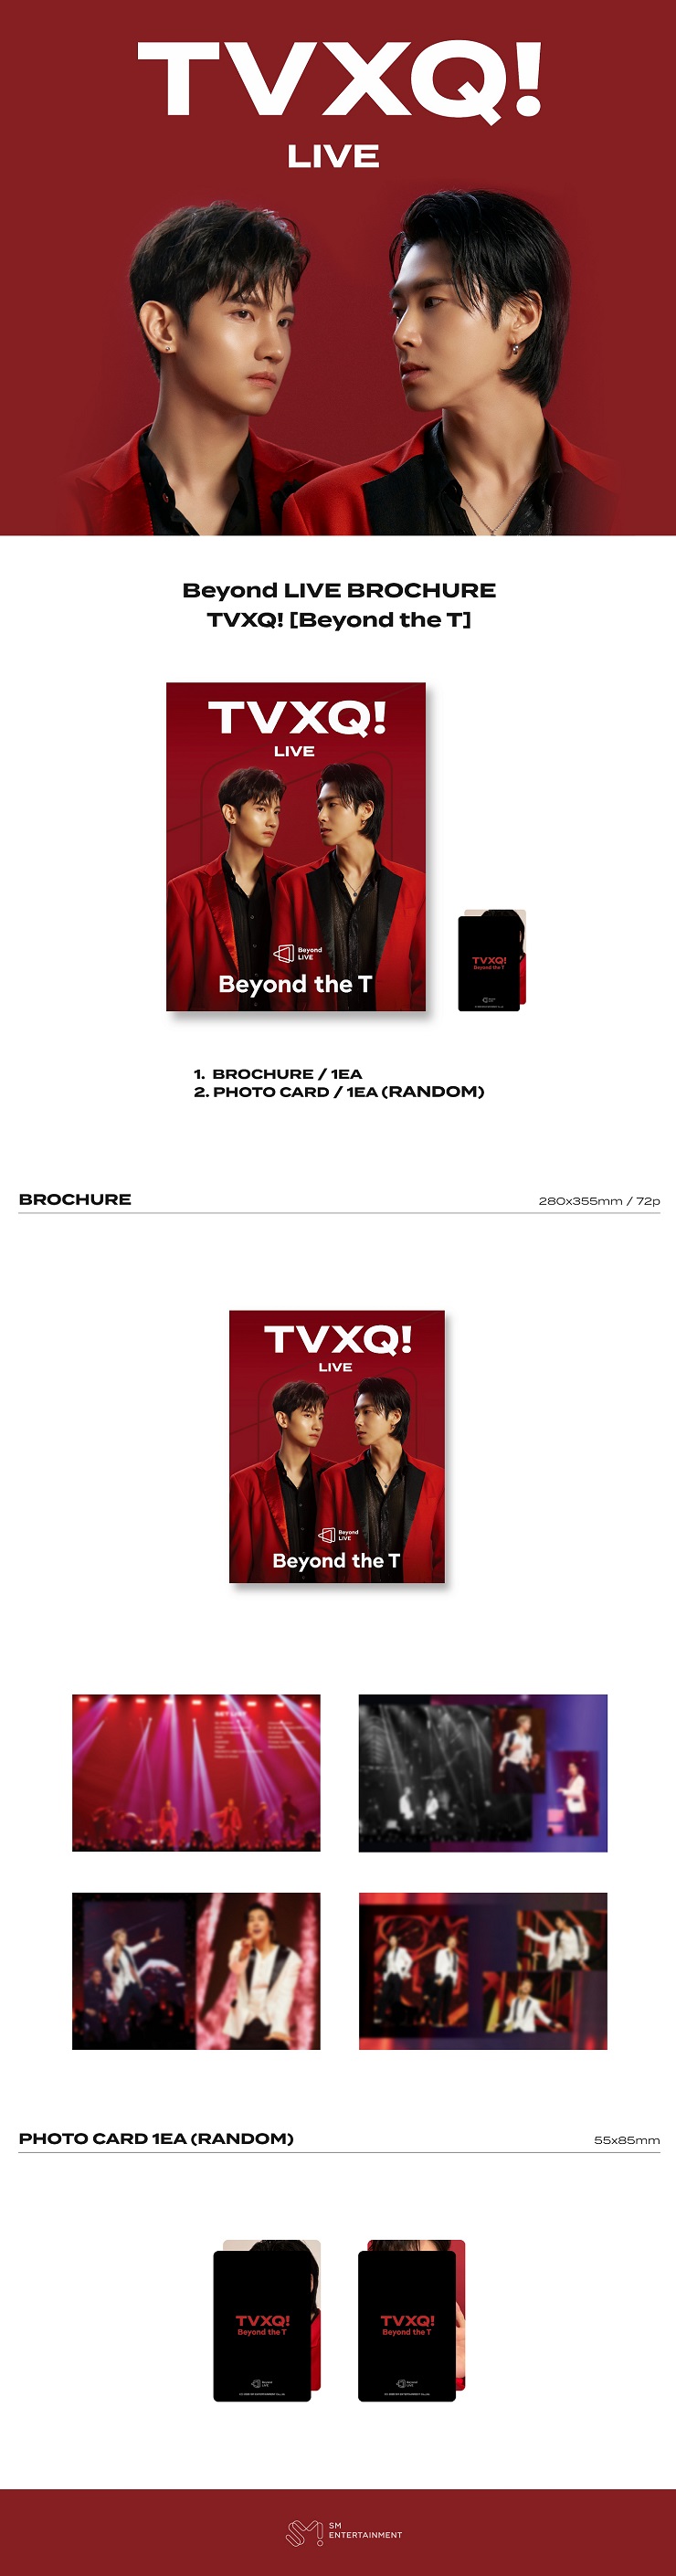 동방신기(TVXQ!) - Beyond LIVE BROCHURE TVXQ! [Beyond the T]